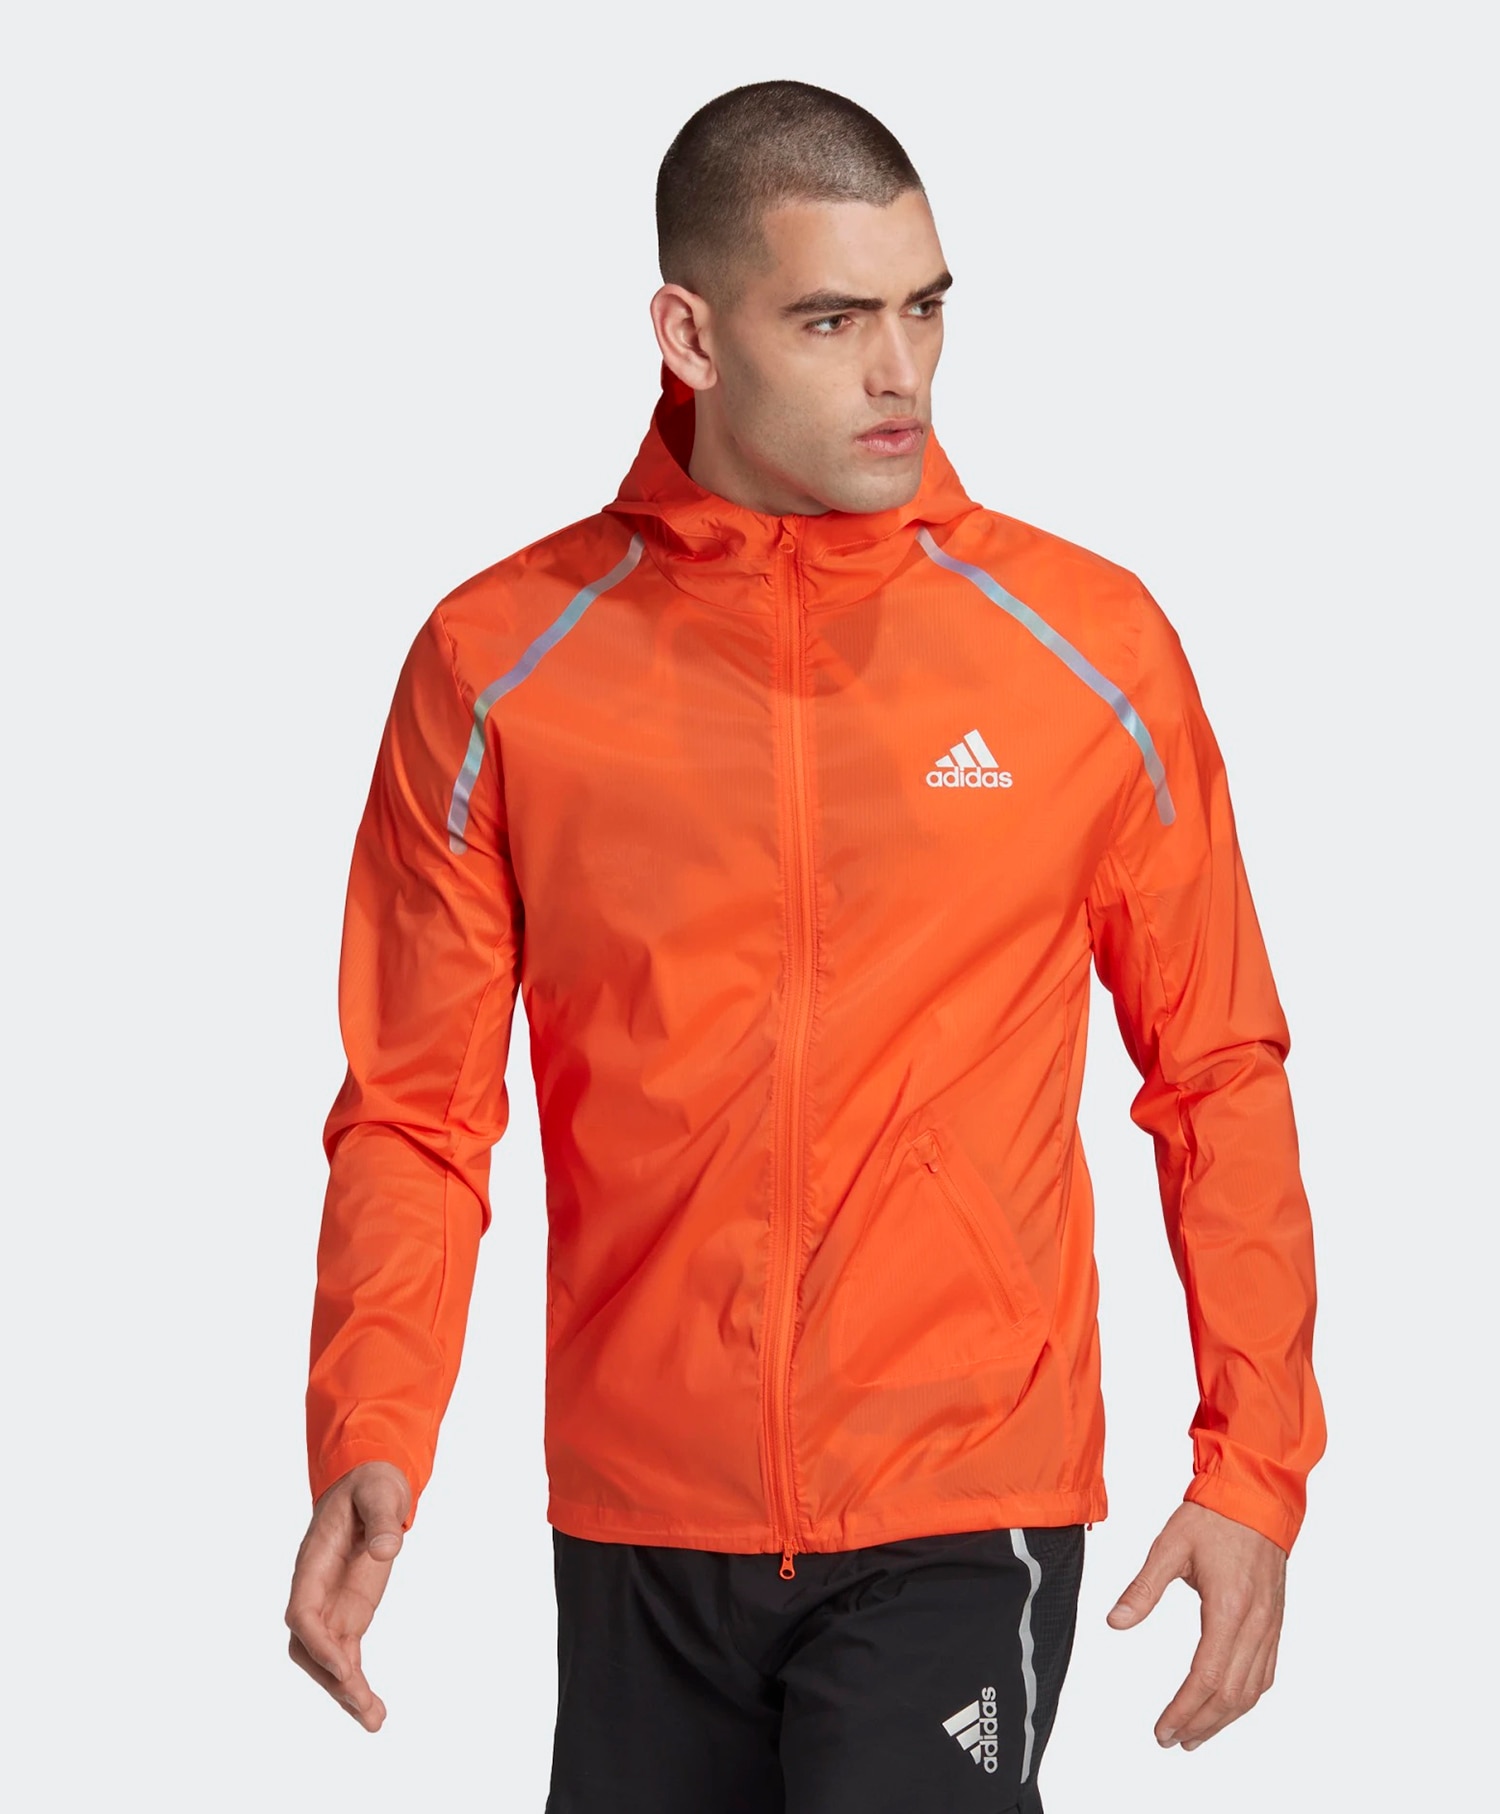 Adidas Maraton jacket